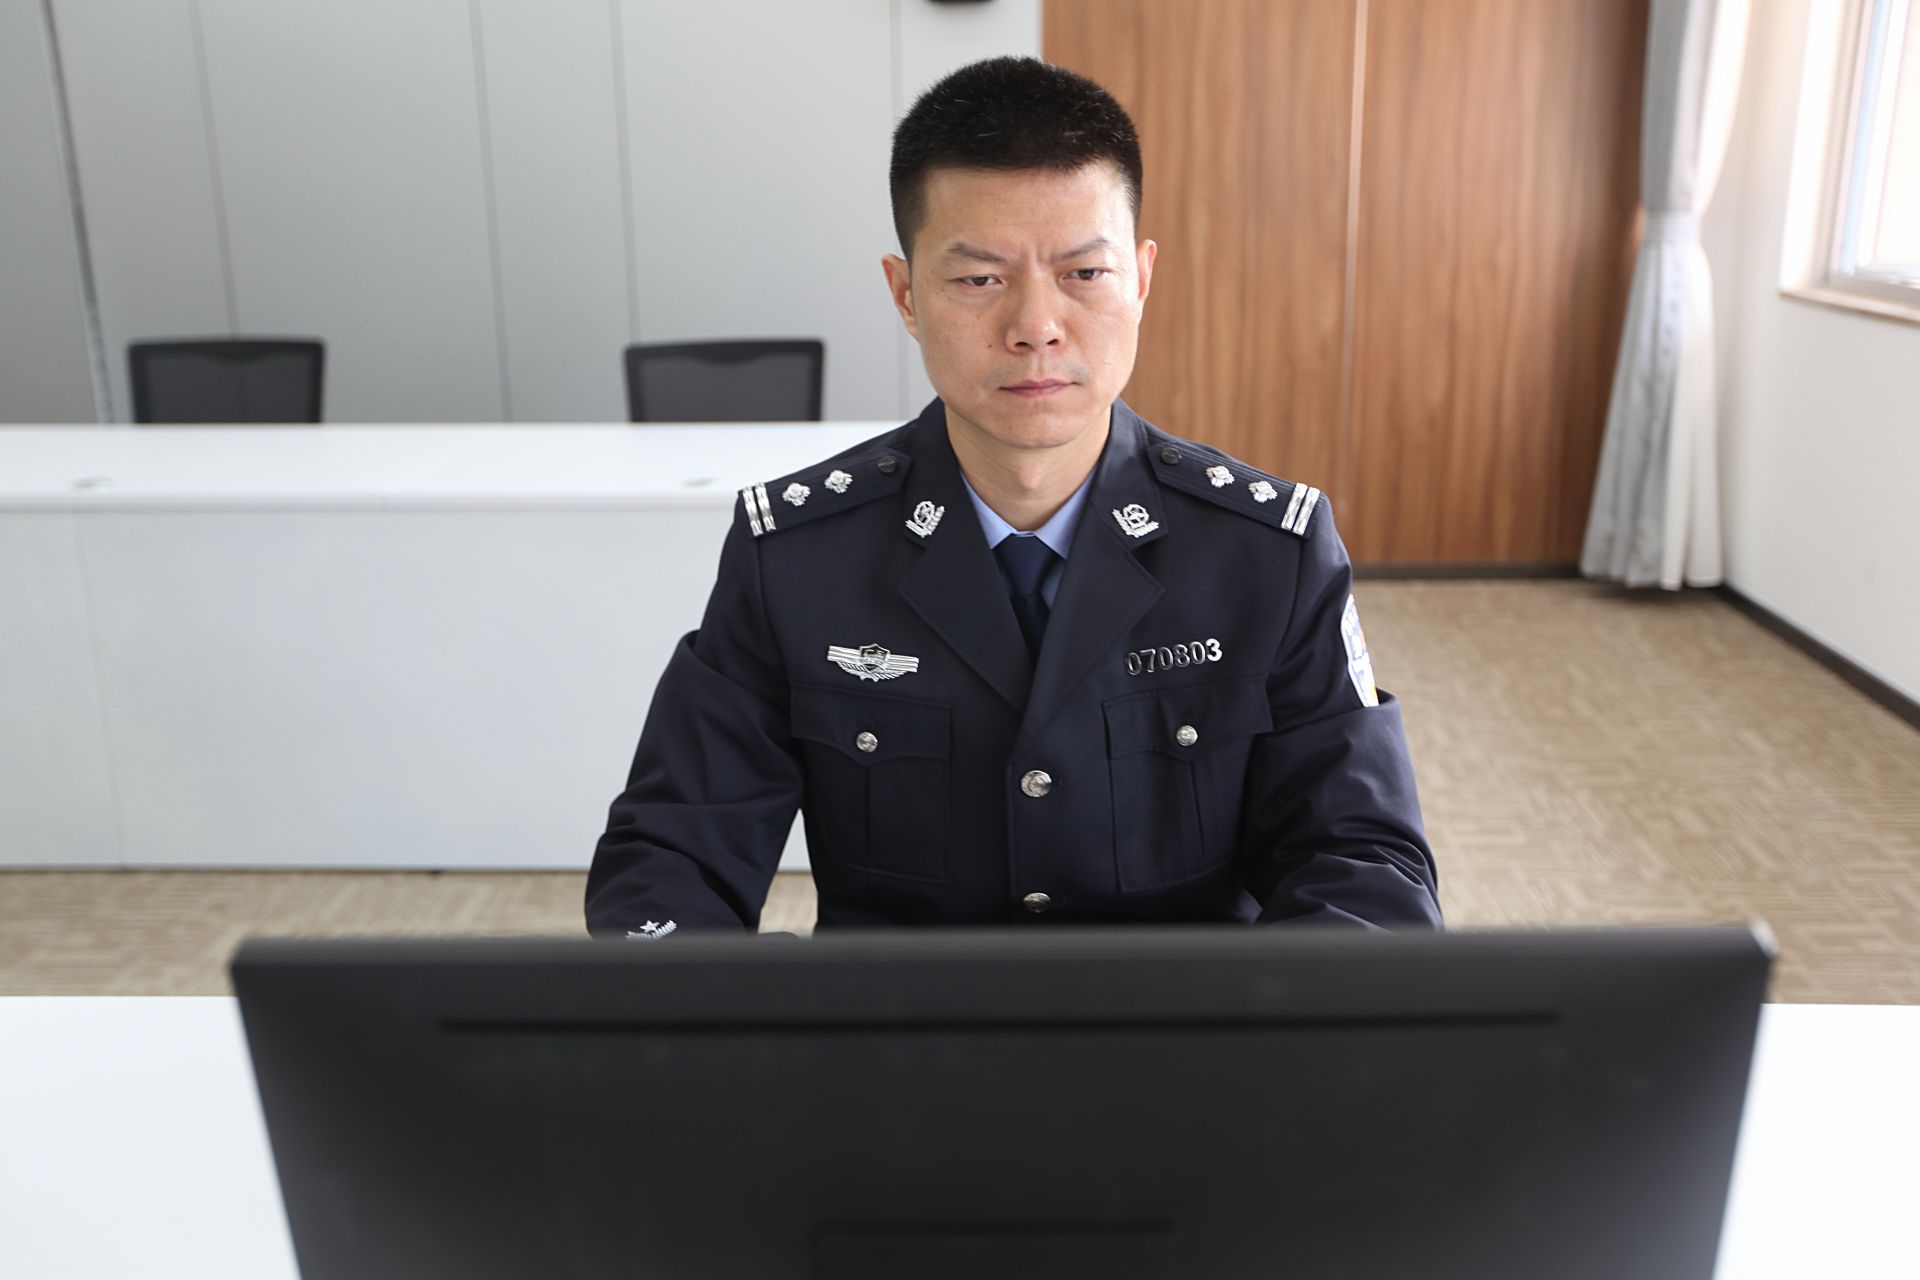 男,1979年2月出生,2012年从部队转业后入警,现为深圳市公安局警卫支队